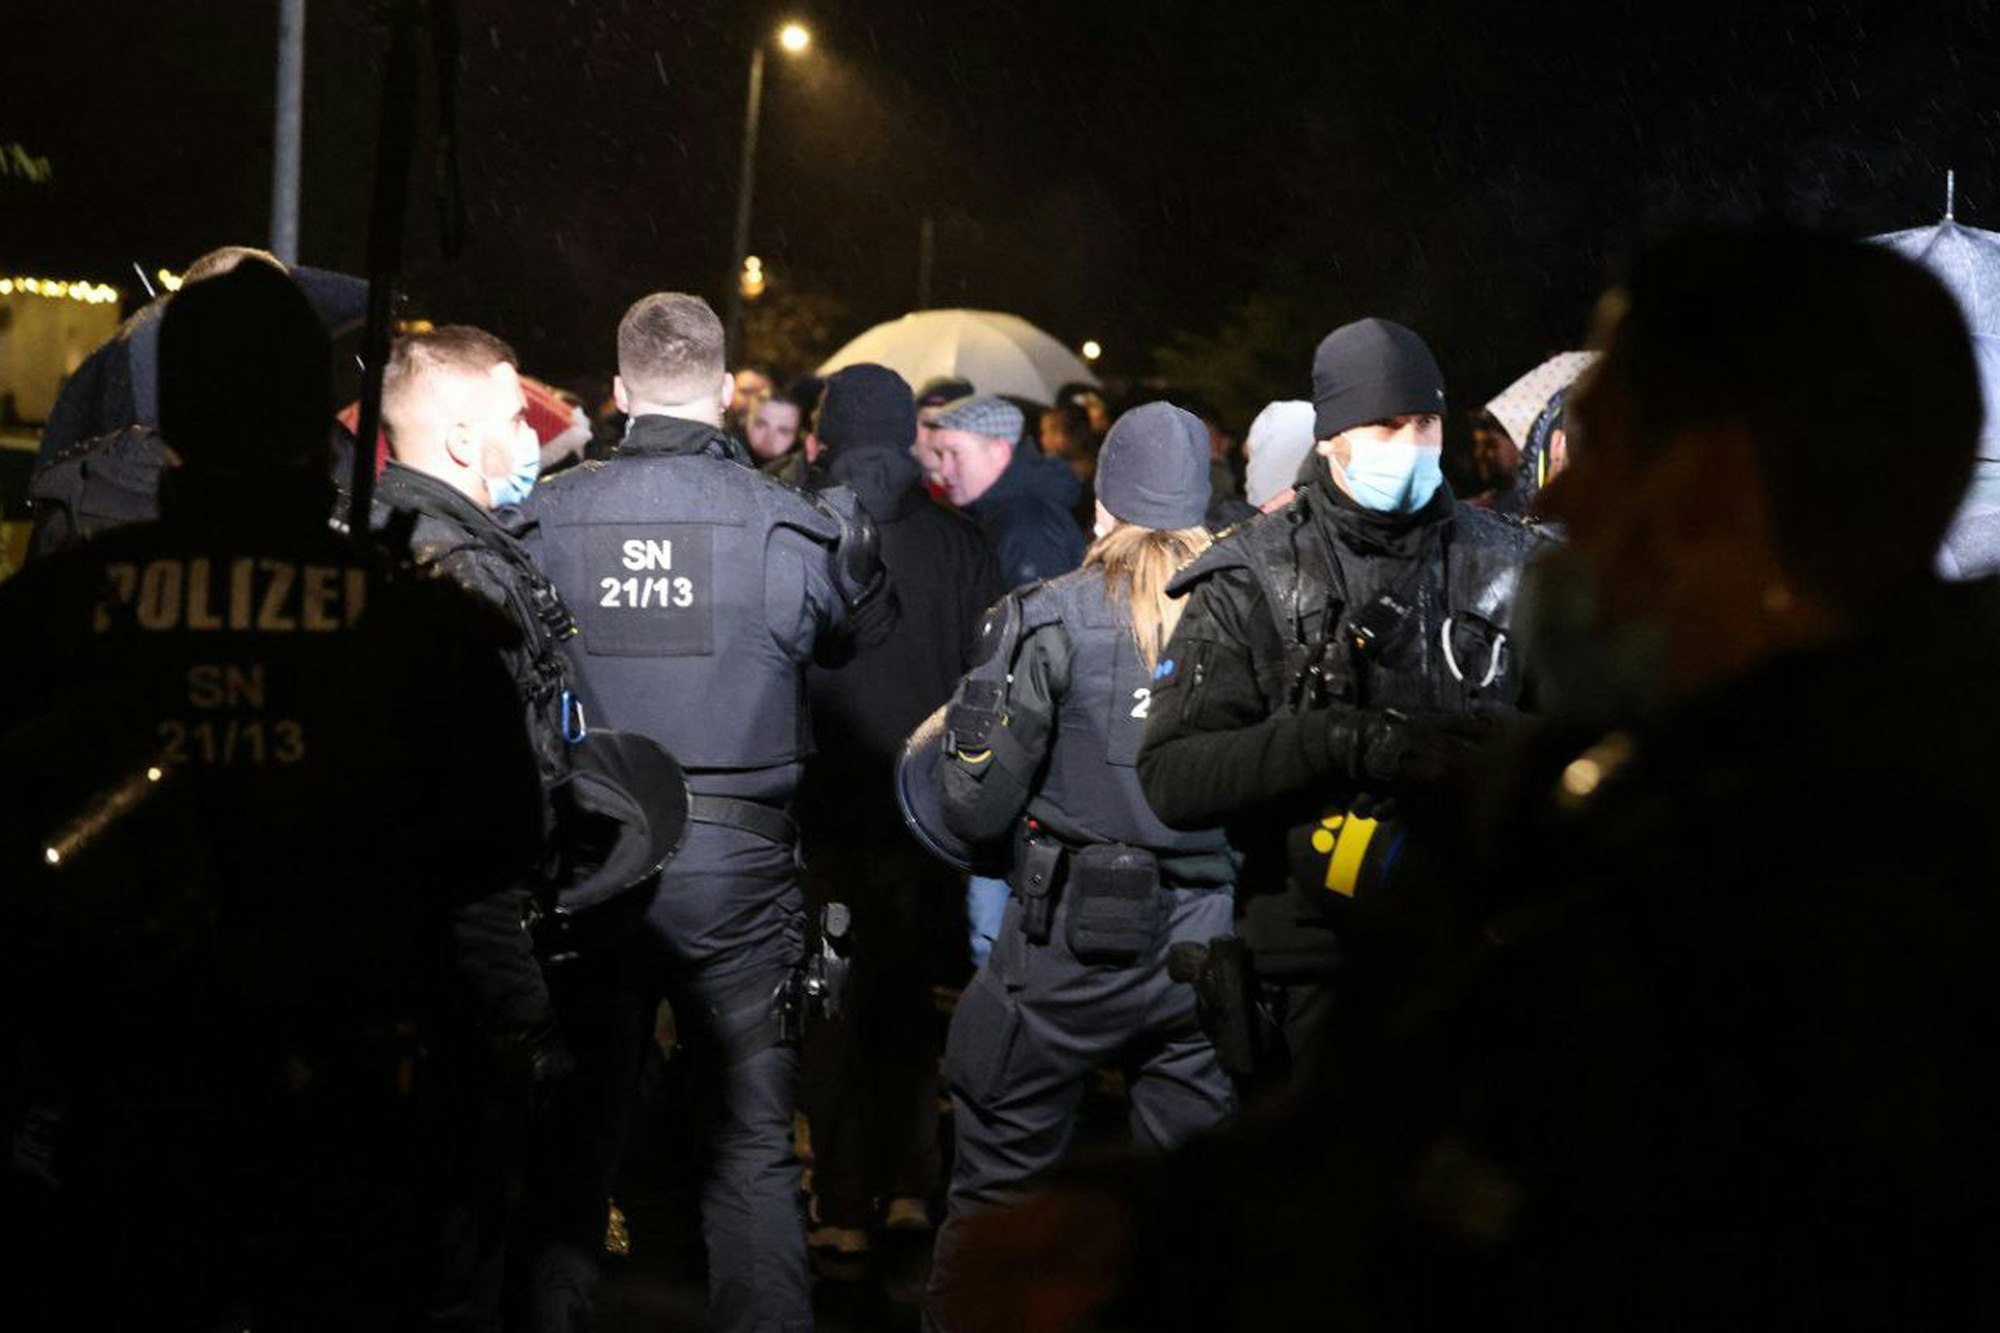 Polizisten beobachten mehrere Personen bei einer Gruppenbildung am 12.12.2021 im sächsischen Bennewitz. Versammlungen mit mehr als zehn Menschen sind wegen der Corona-Lage in Sachsen derzeit nicht gestattet.